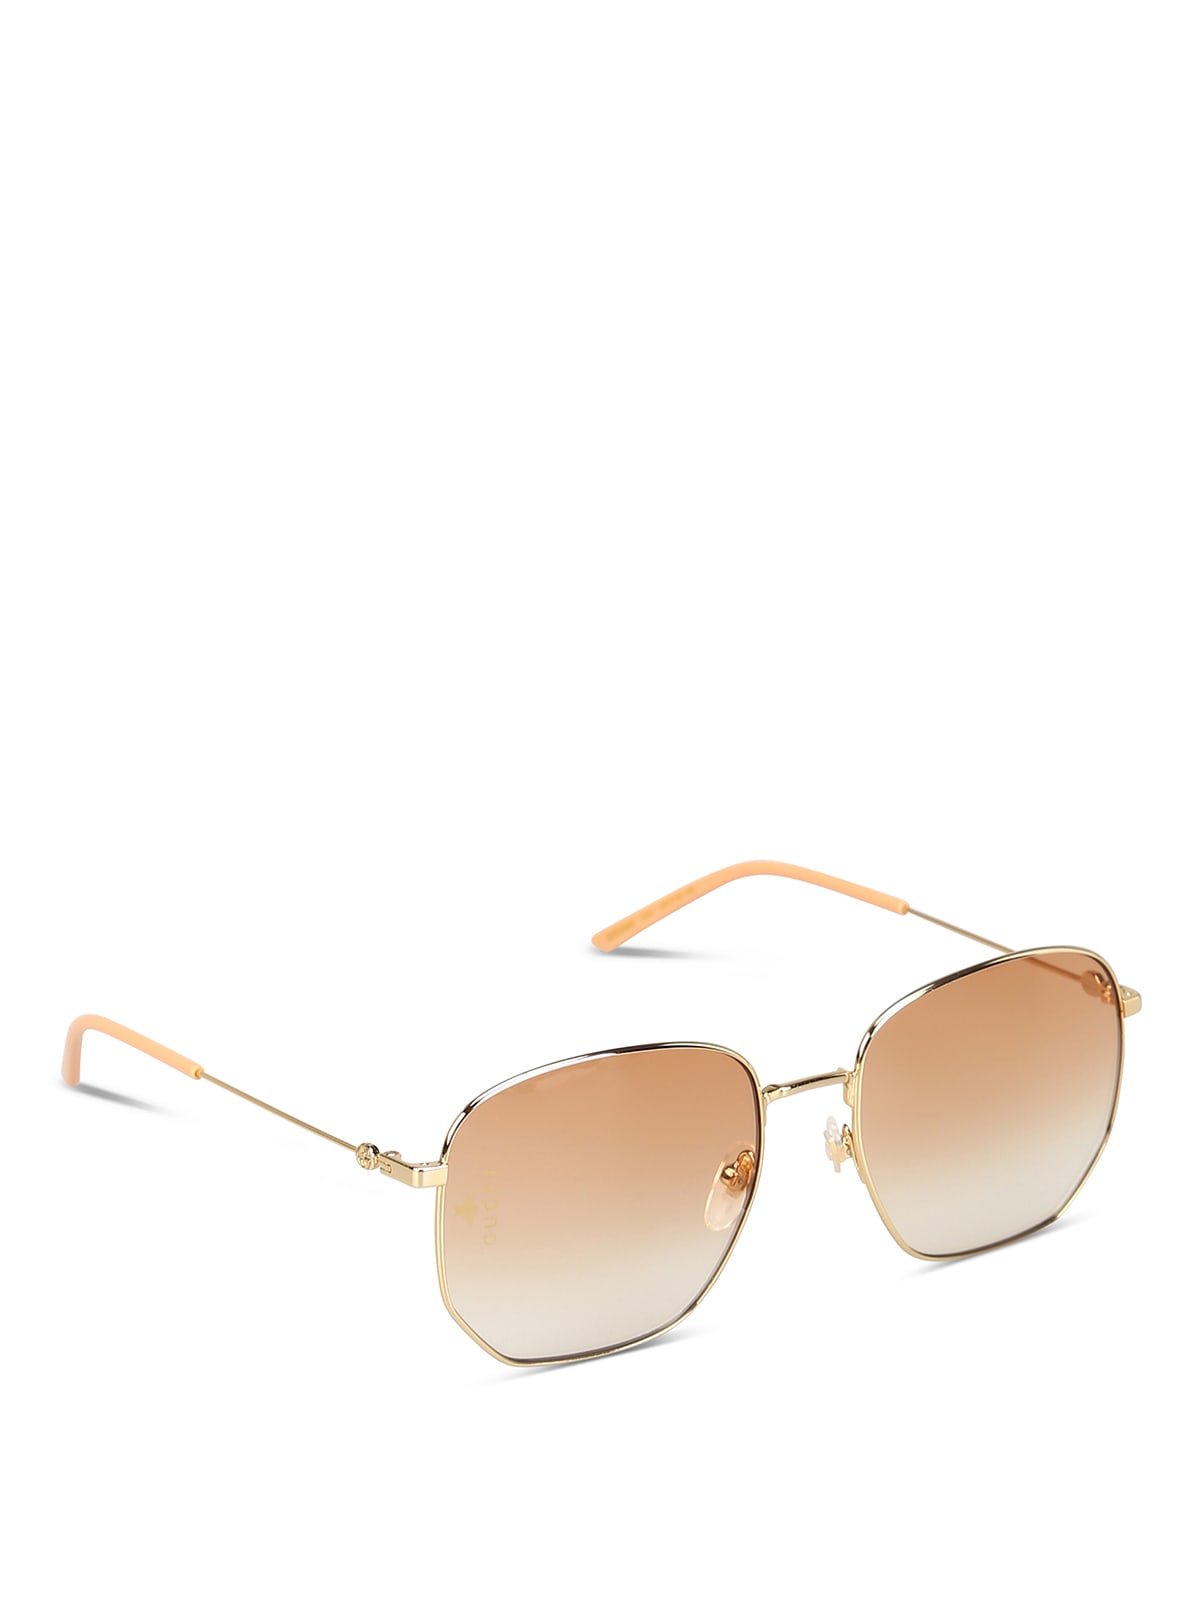 Gucci Gg0396s Sunglasses In Gold Gold Orange